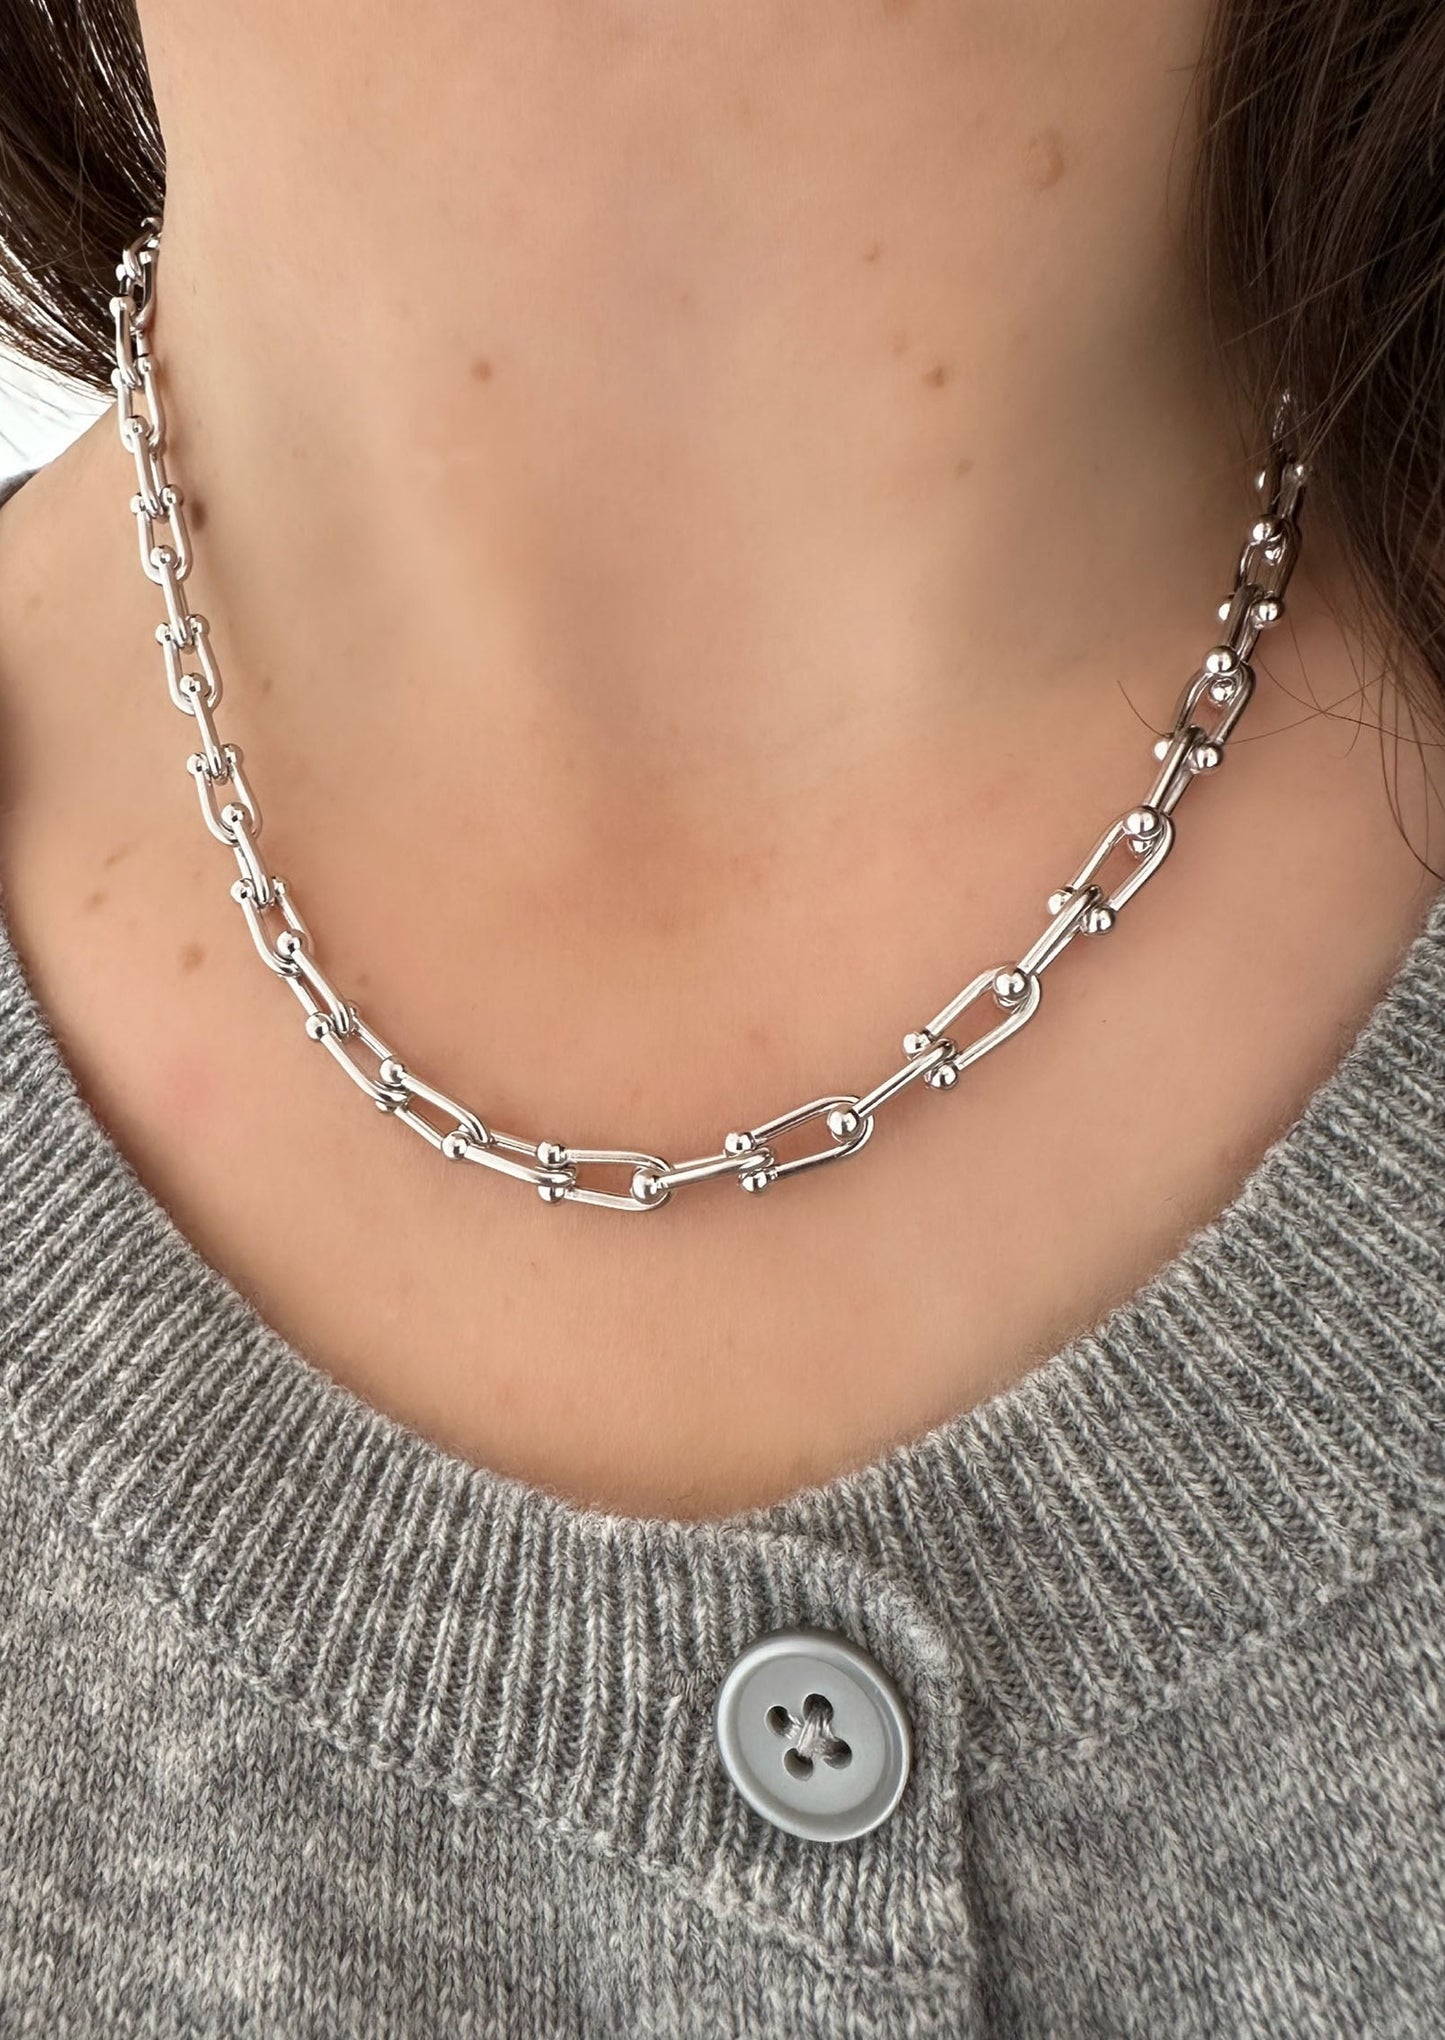 Tiffany Hardware Necklace